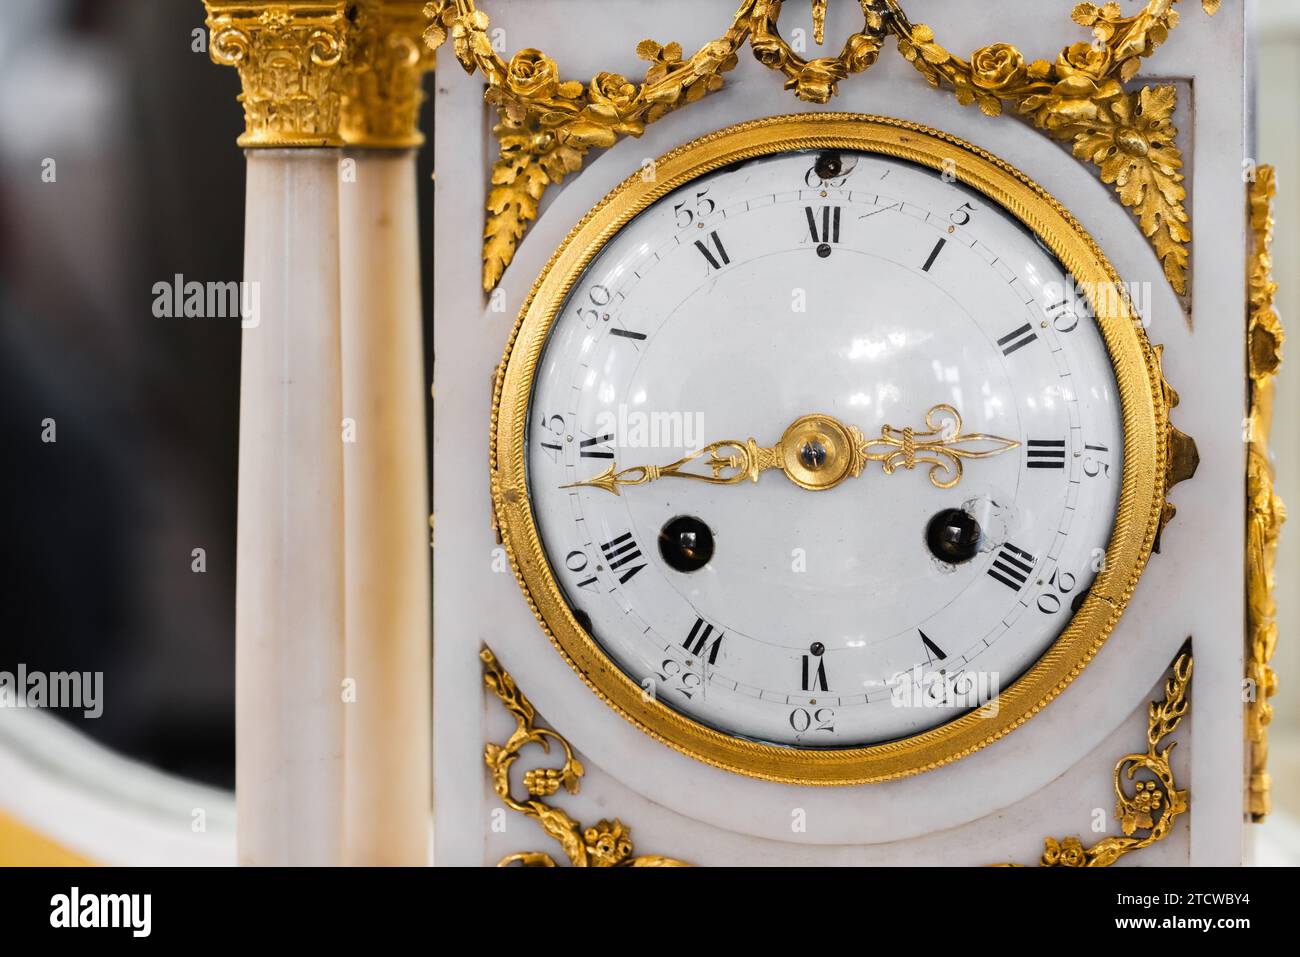 Foto ravvicinata dell'orologio del mantello con campanello d'epoca, vista frontale. Quadrante dell'orologio in smalto bianco con numeri romani e lancette dorate, segnatempo in stile barocco Foto Stock